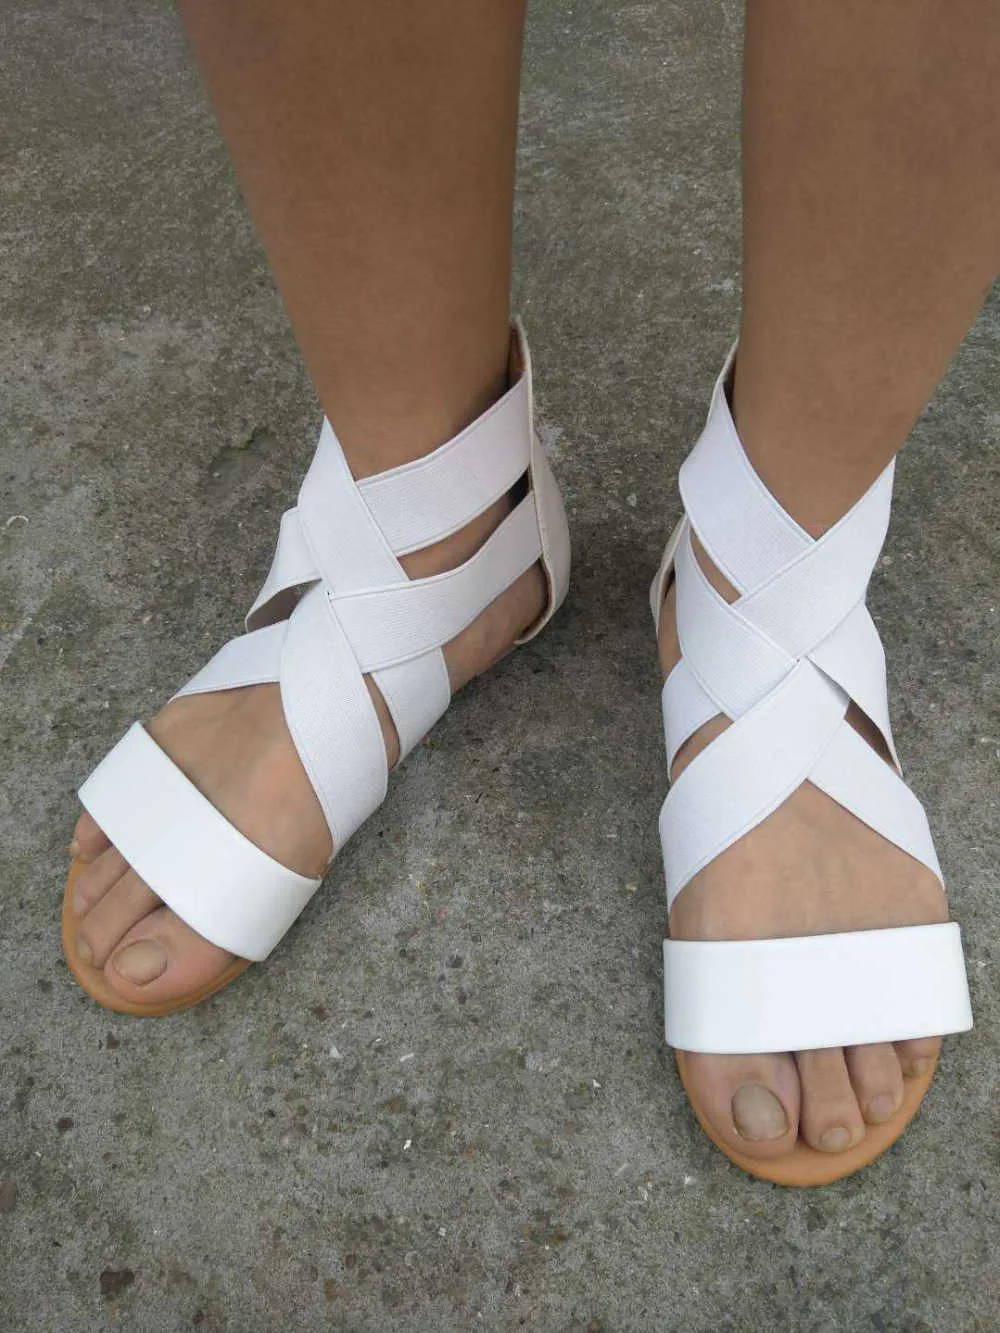 Imkkg Sandały Letnie Kobiety Przypadkowe buty Kobiet Gladiator Płaski Rzym Zip Feminina Soft Doto Sandalia M192 Y0721